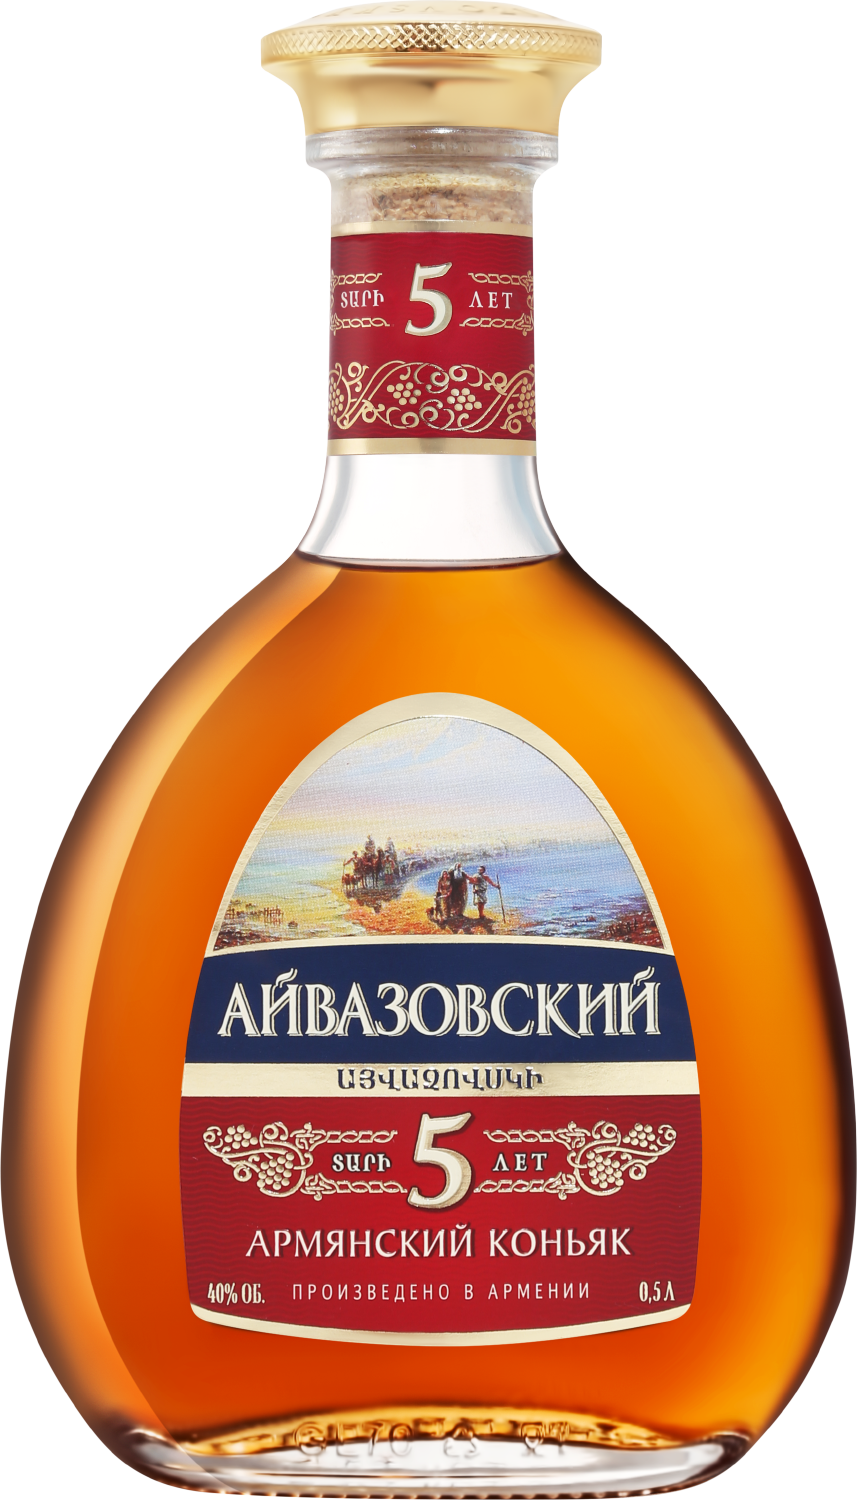 aivazovsky armenian brandy 5 y o Aivazovsky Armenian Brandy 5 Y.O.